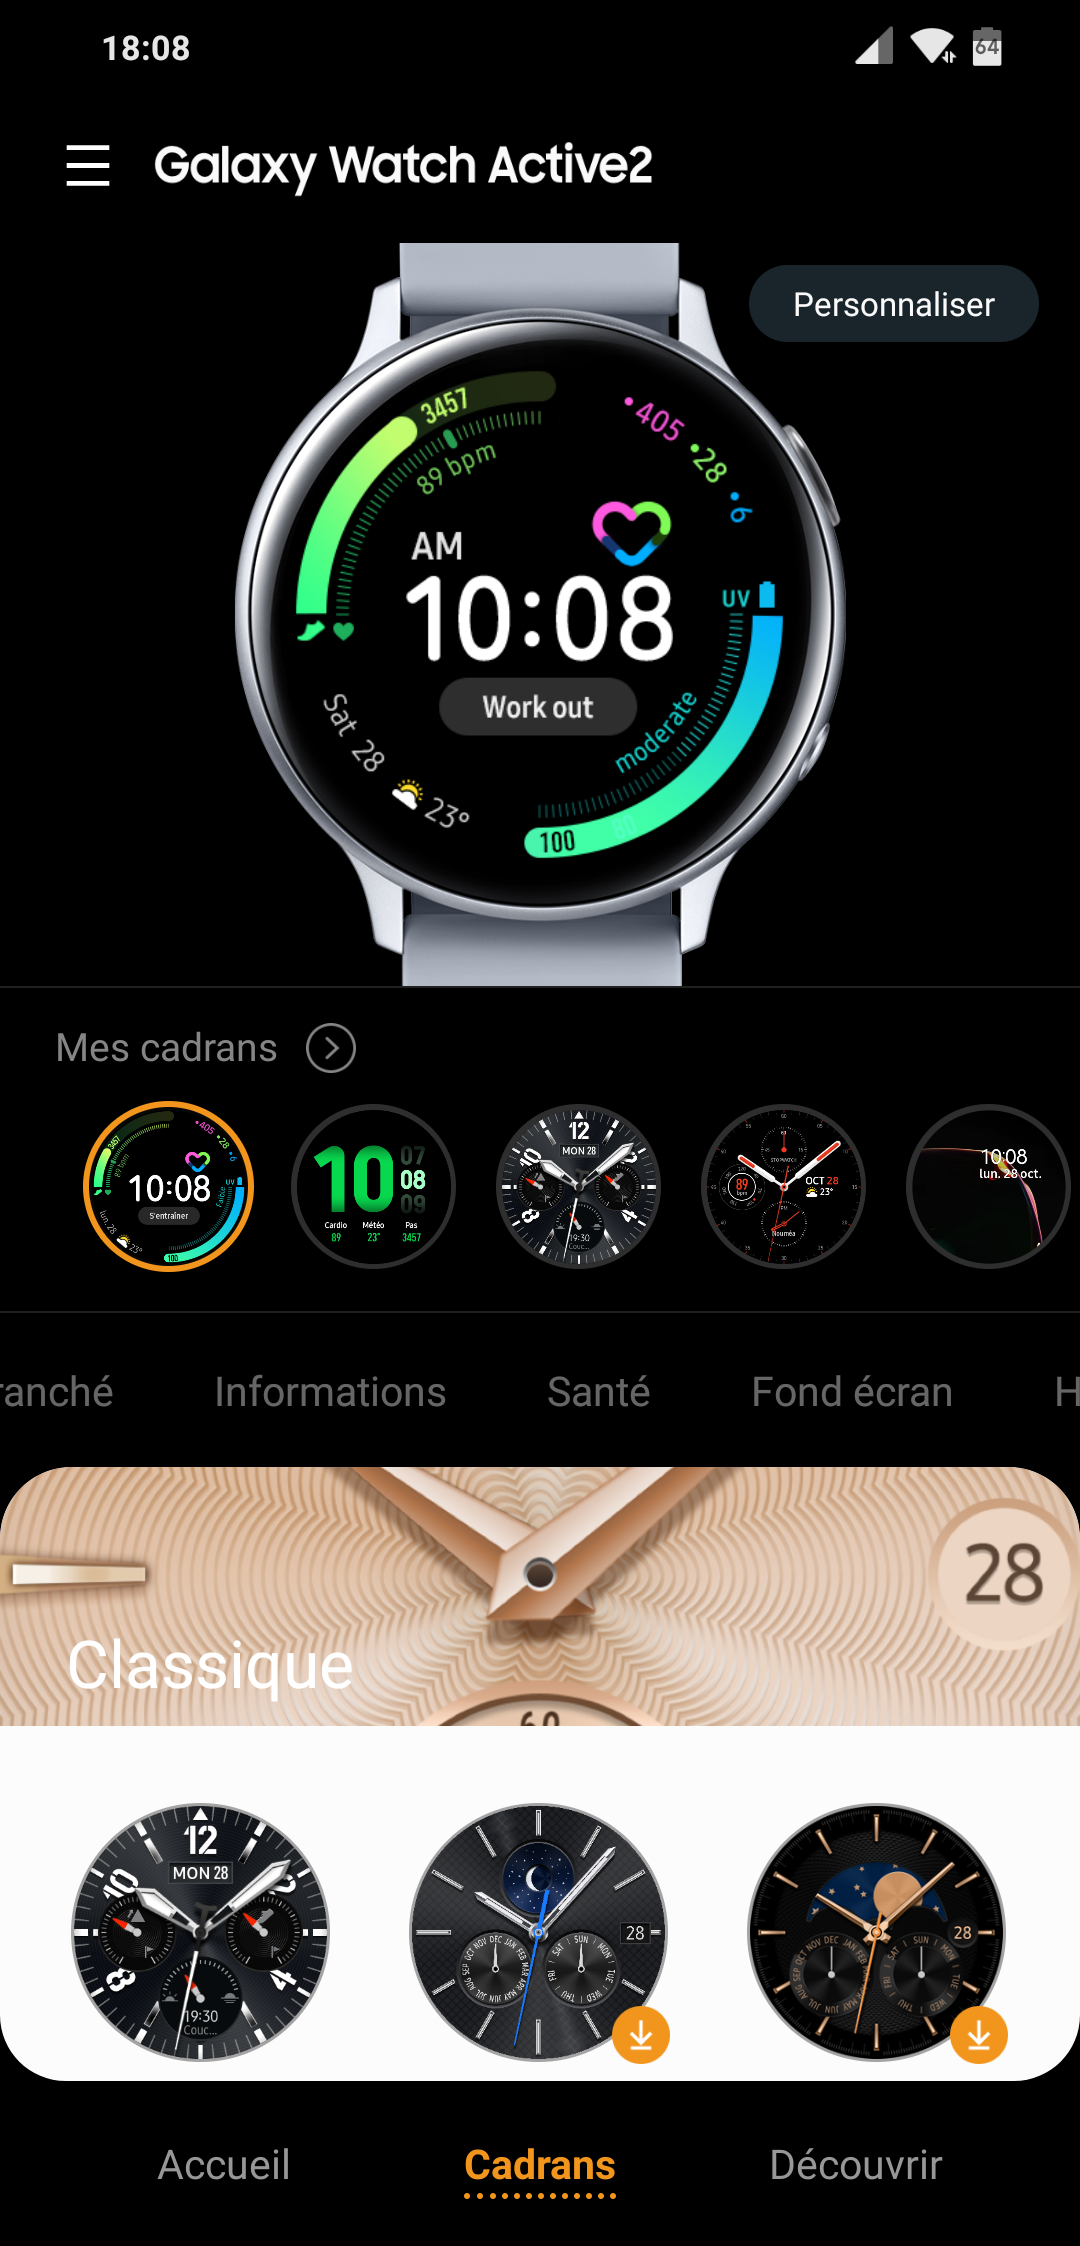 Galaxy Watch Active 2 - Cadrans